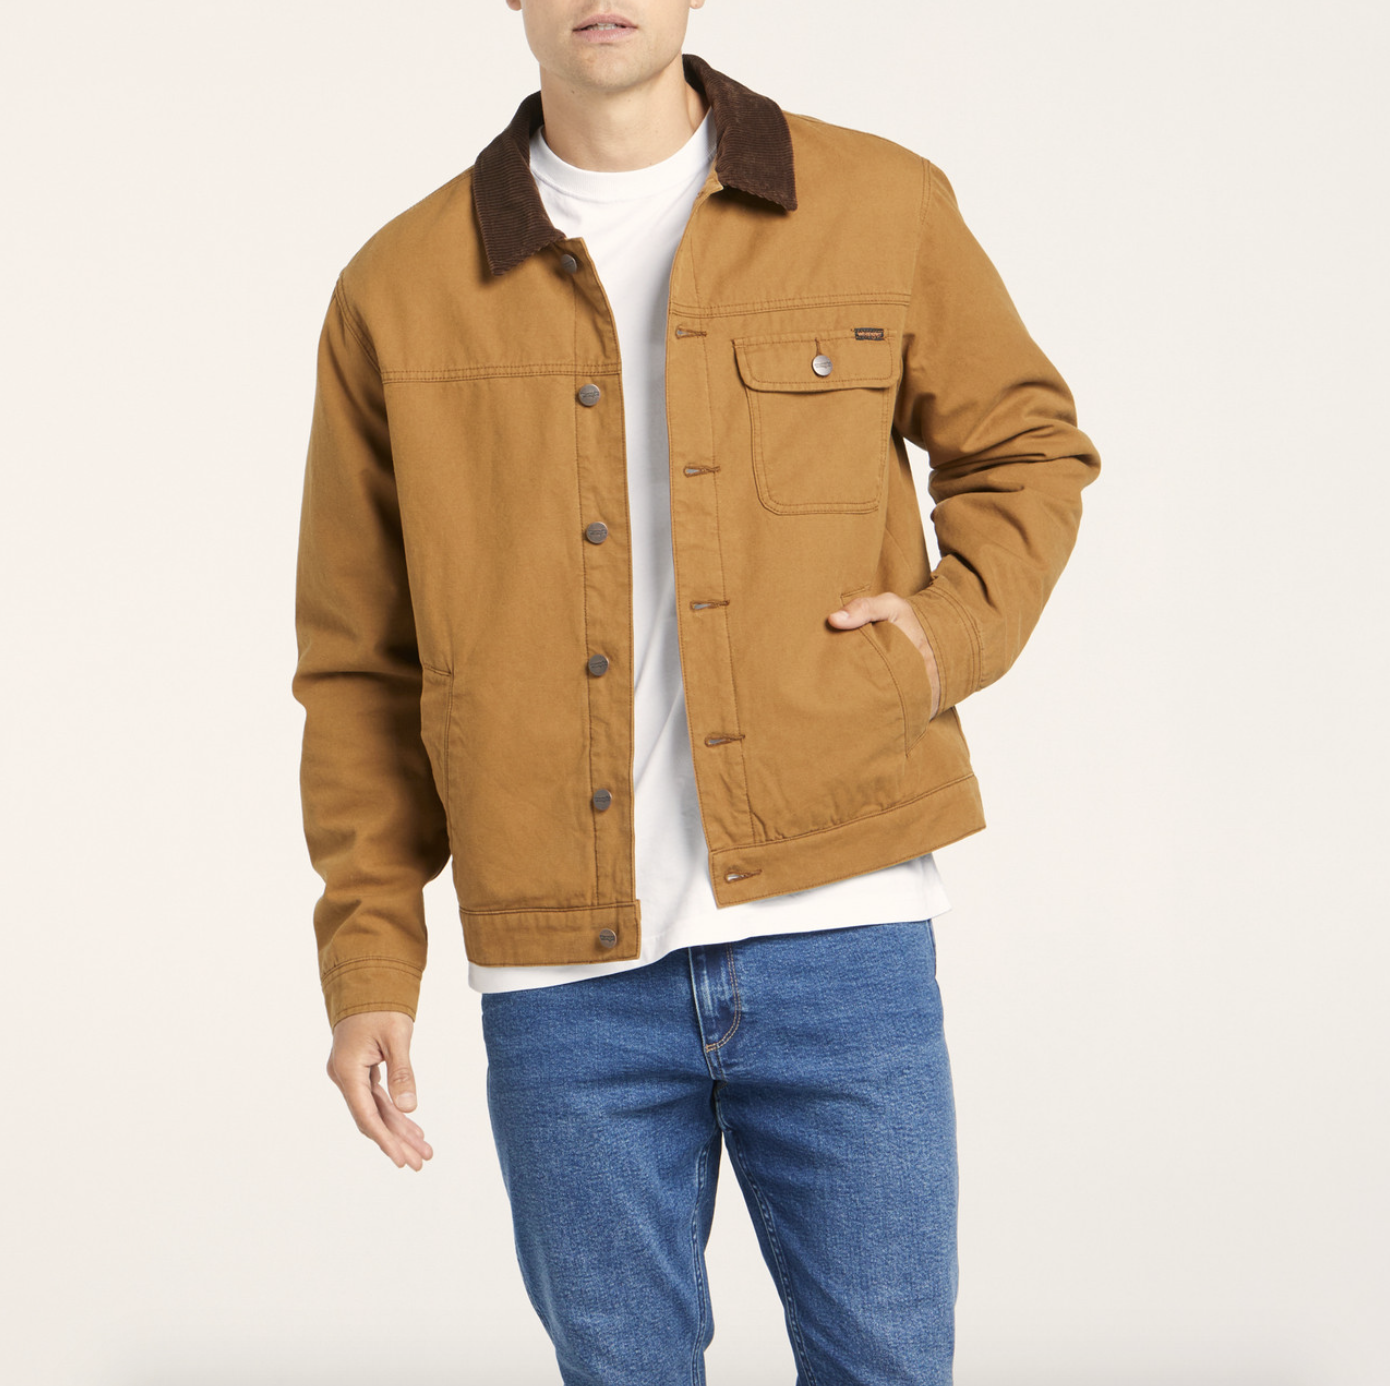 Wrangler Workwear Jacket - Duck Canvas - Jac n Jean